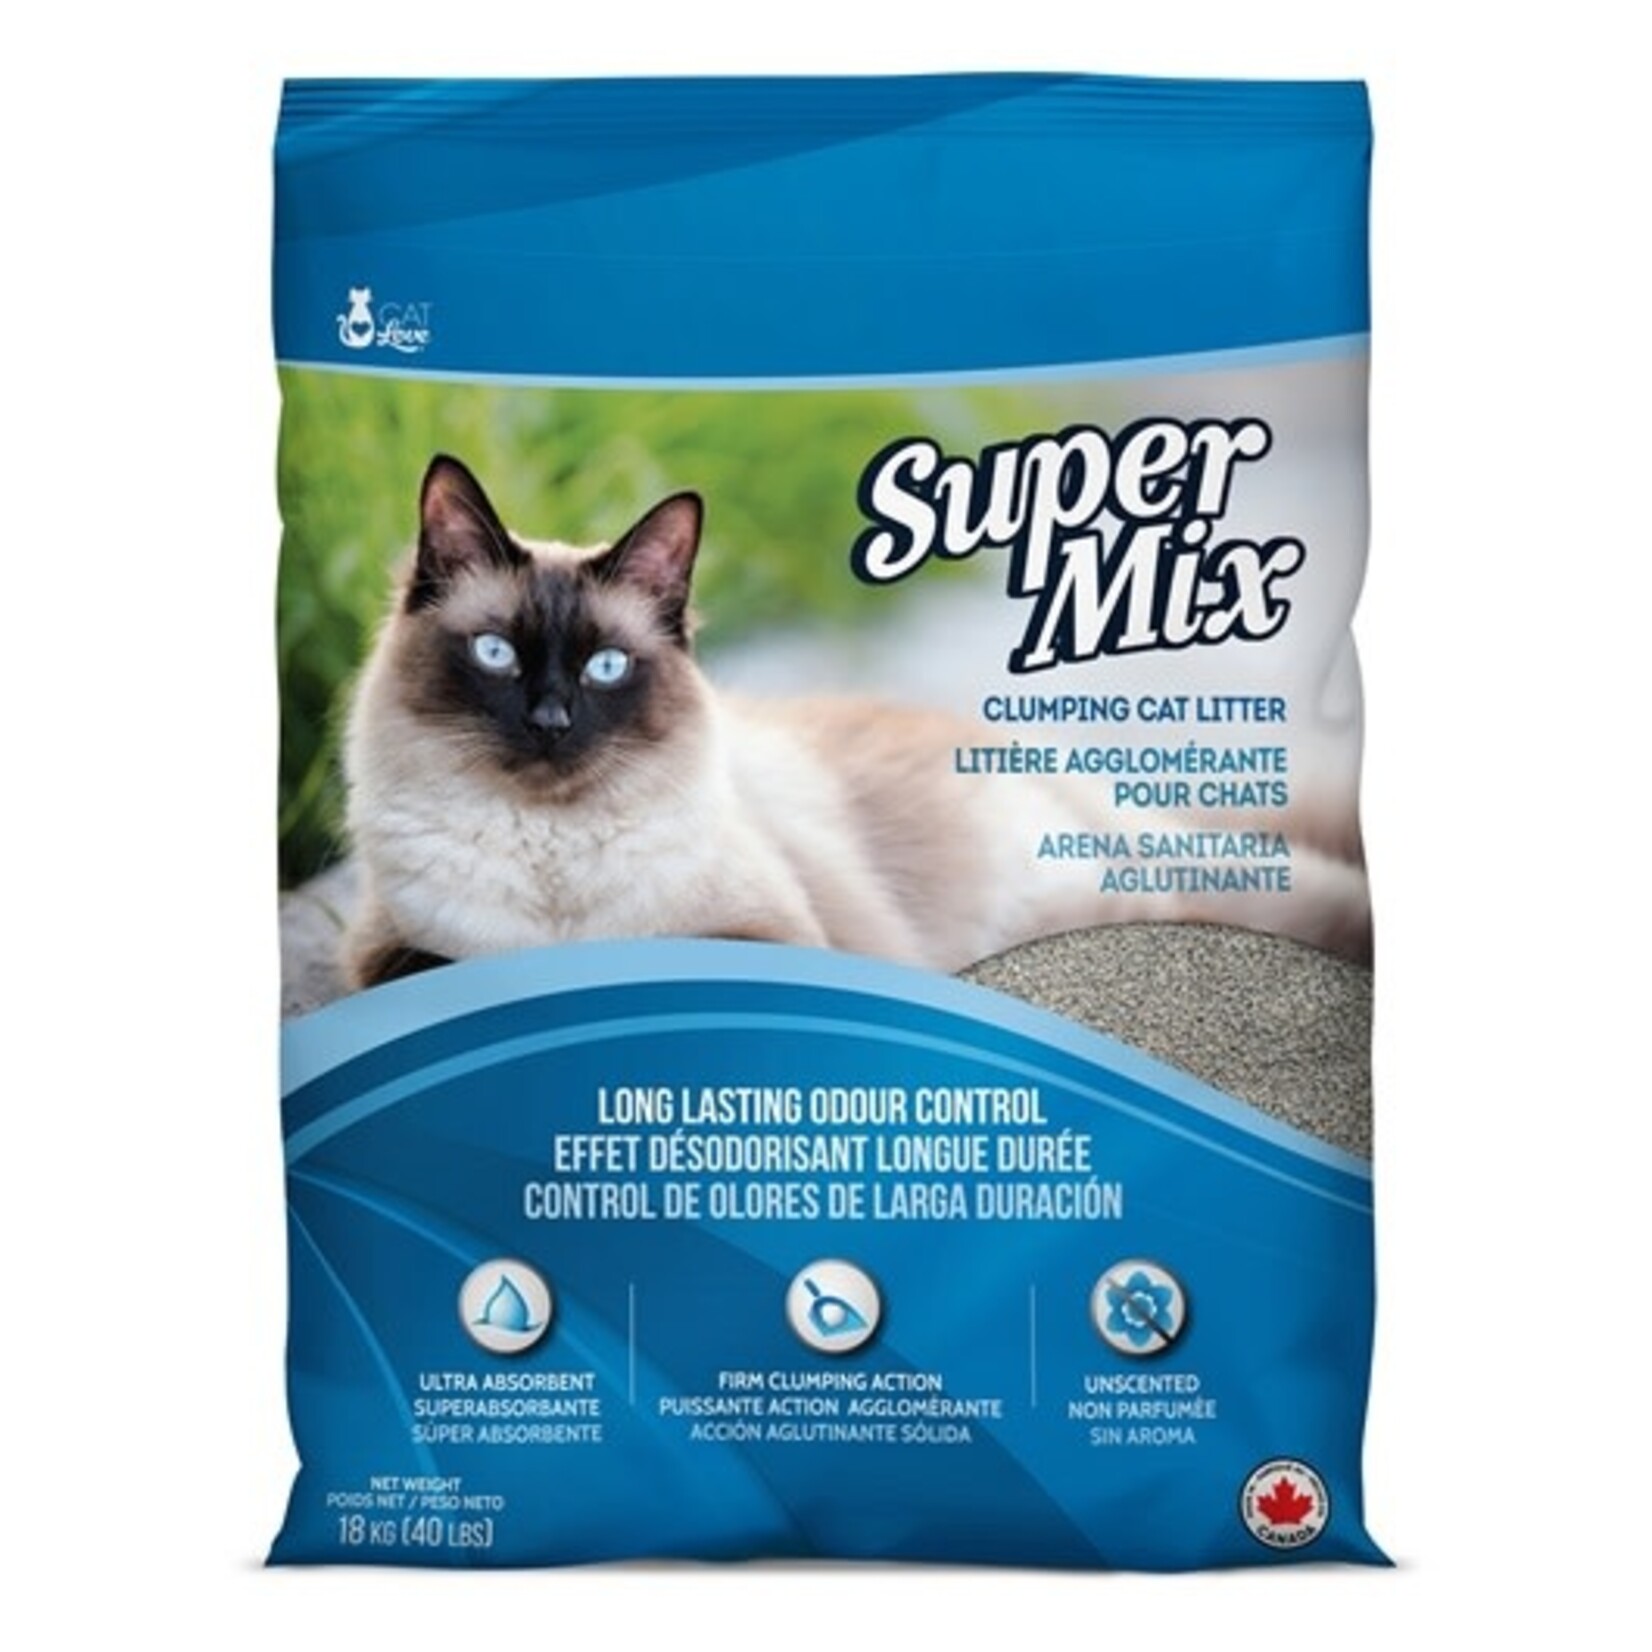 Mix Cat Litière agglomérante Super Mix Cat Love non parfumée, 18 kg (40 lb)